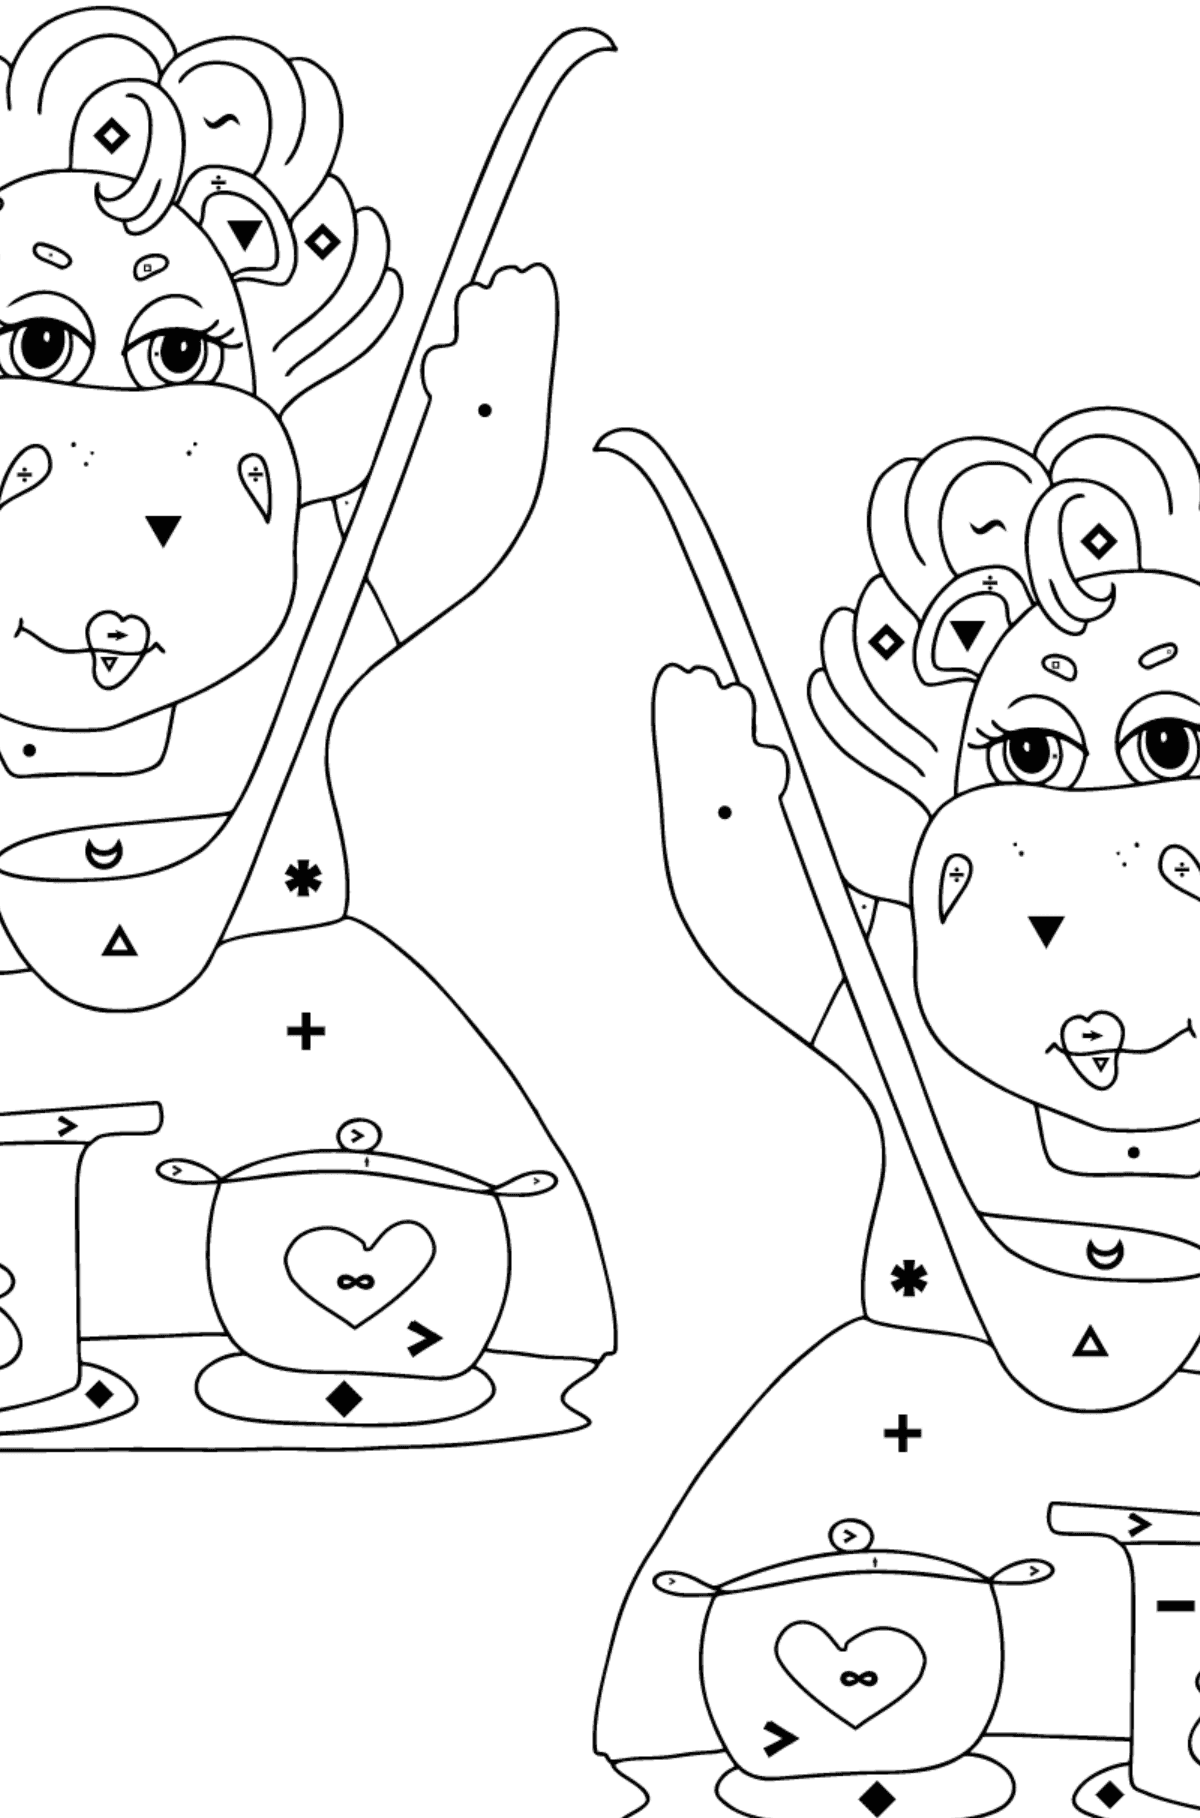 Coloriage Hippopotames magiques (difficile) - Coloriage par Symboles pour les Enfants